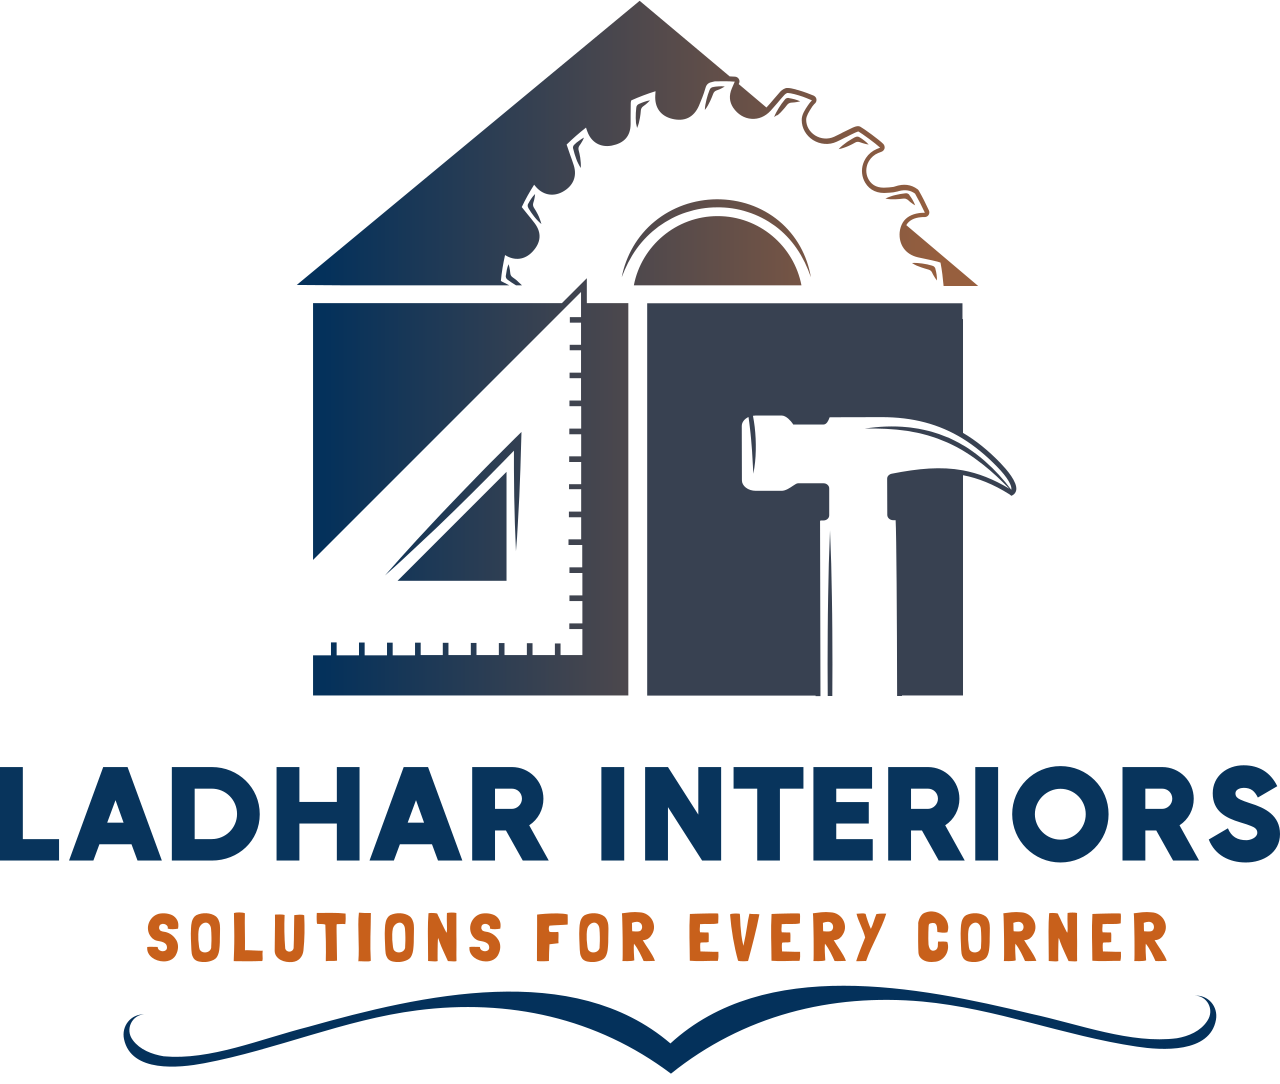 Ladhar interiors 's logo